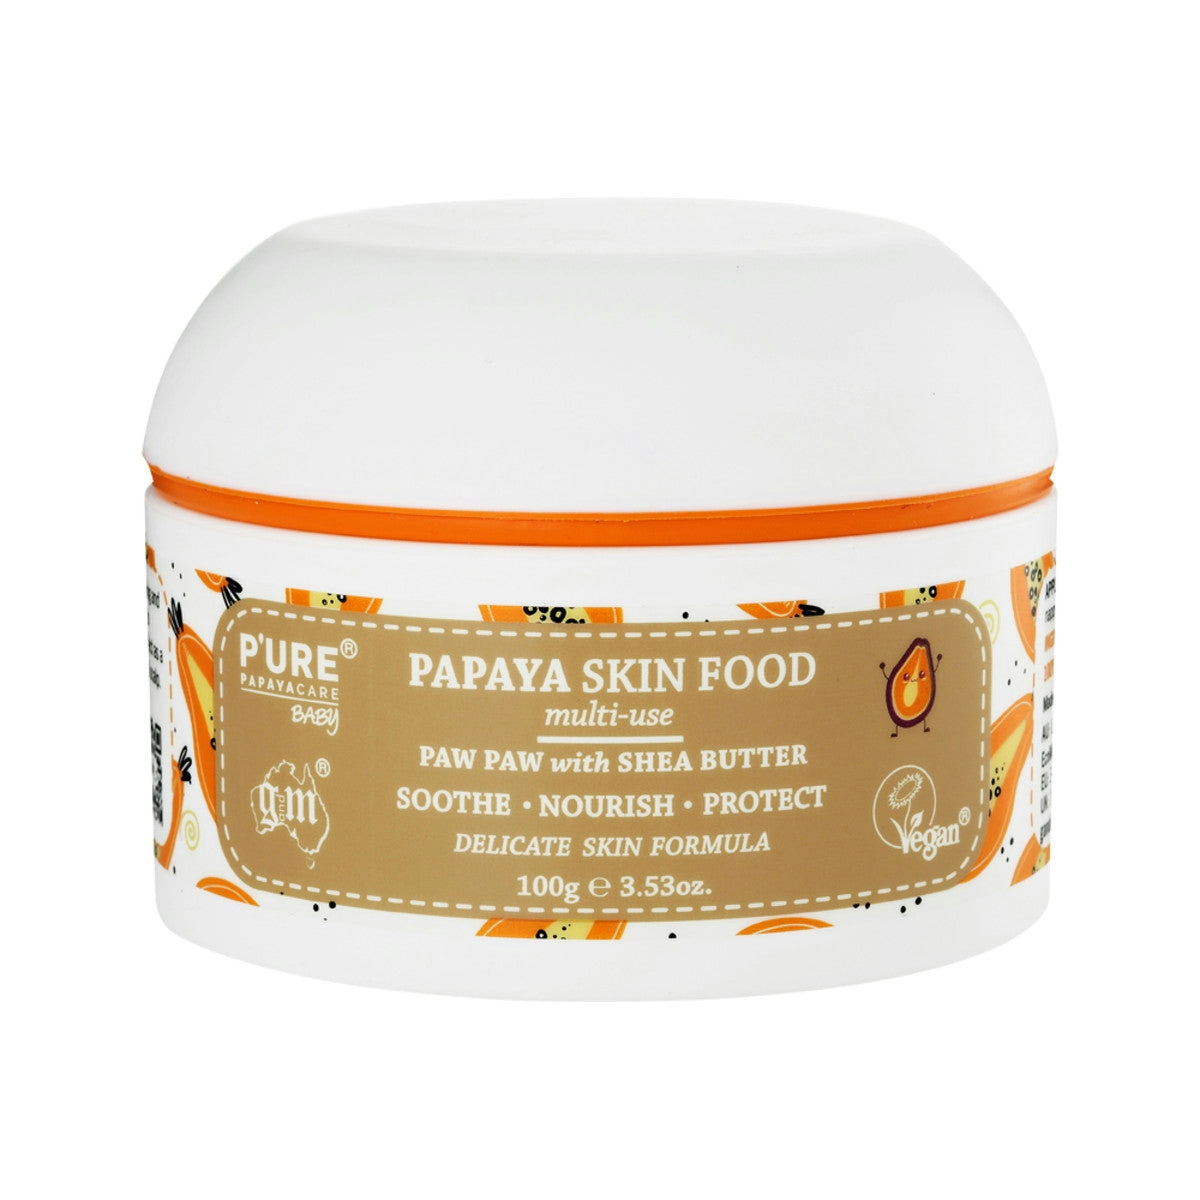 image of P'URE Papayacare Baby Papaya Skin Food Multi-Use (Paw Paw with Shea Butter) 100g on white background 